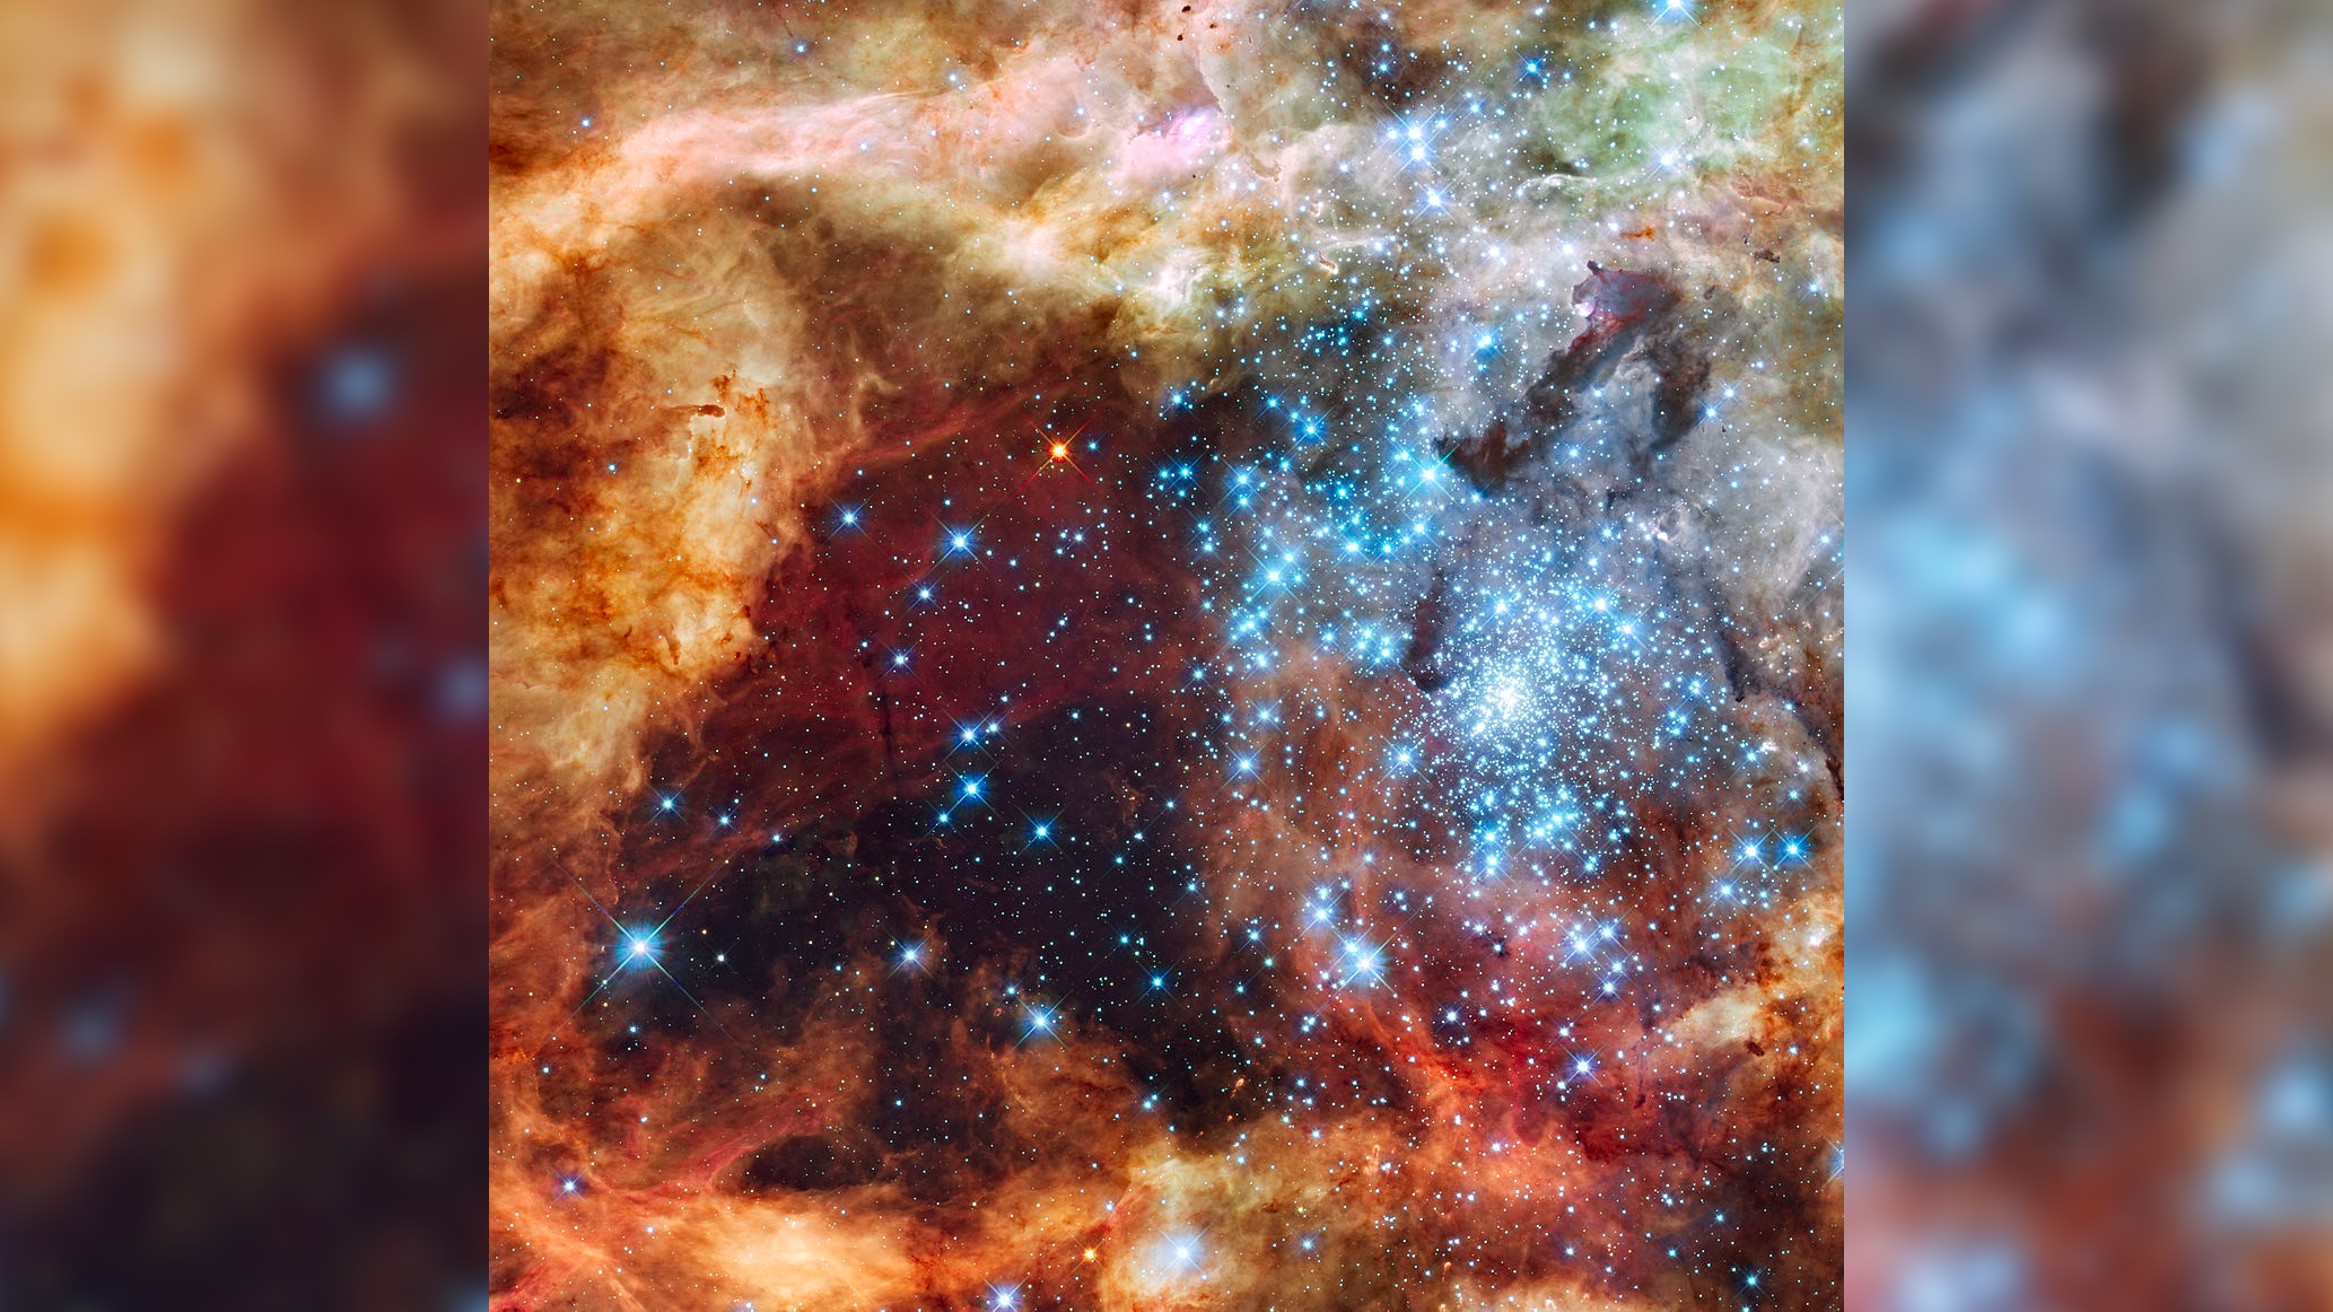 Звездный питомник, наполненный облаками оранжевой и желтой пыли.  В центре изображения — скопление ярких бело-голубых звезд.